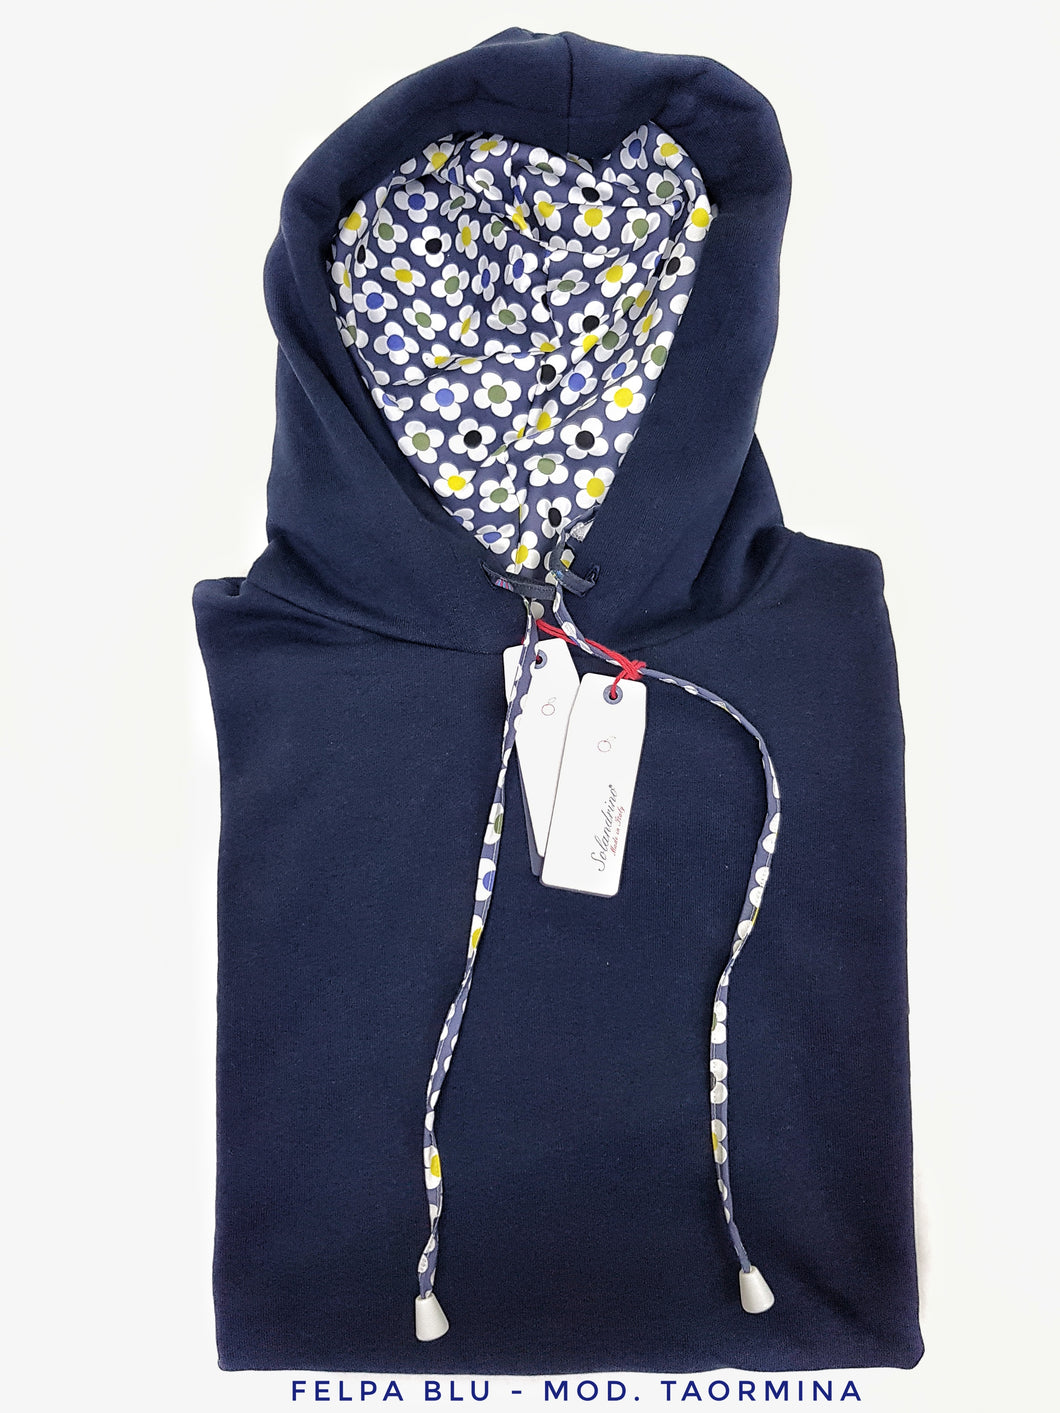 Felpa Blu con Cappuccio Design Taormina made in Italy Fantasia  100% cotone -  UNISEX Sweatshirt Blue hoodie